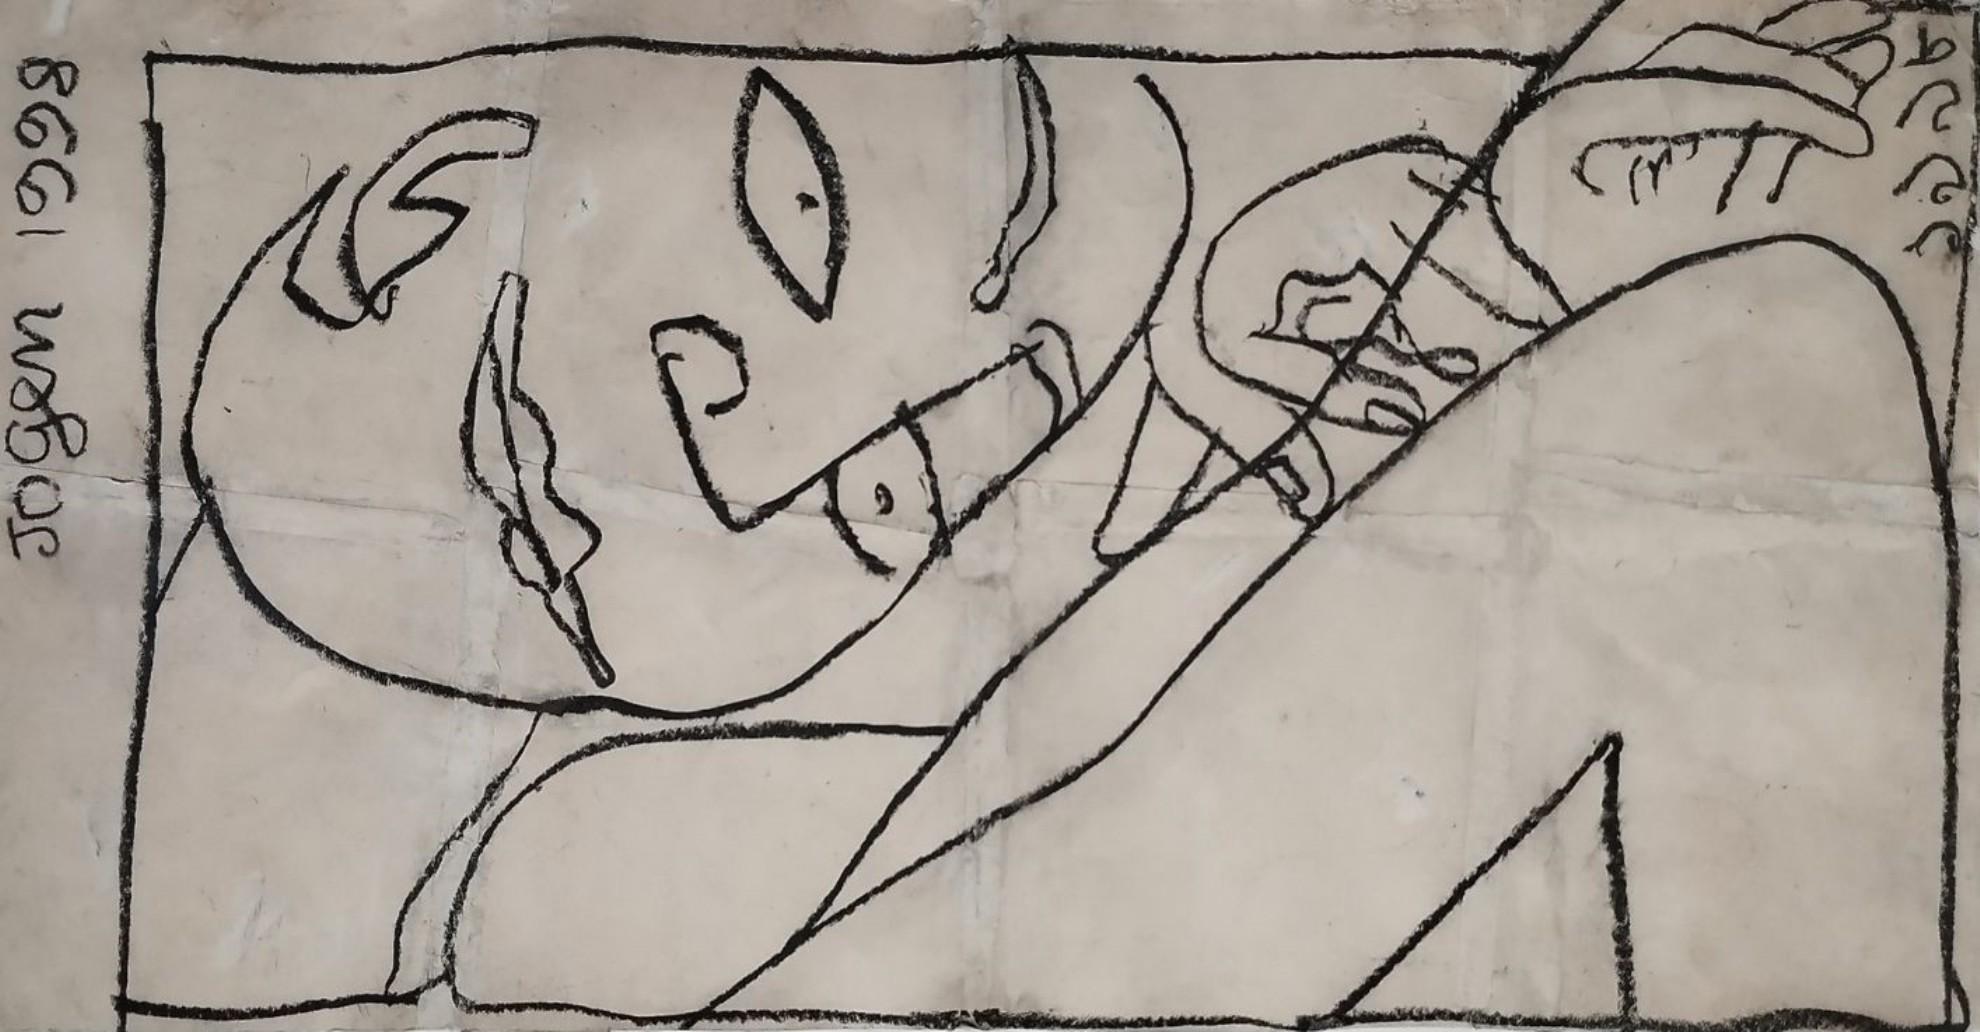 Jogen Chowdhury
Ohne Titel, Zeichenkohle auf Papier
13 x  23 Zoll (ungerahmte Größe) 
1998
 ( Gerahmt & Geliefert )

Stil : Er hat einen immensen Beitrag dazu geleistet, junge Künstler in Indien zu inspirieren. Jogen Chowdhury hatte nach seiner